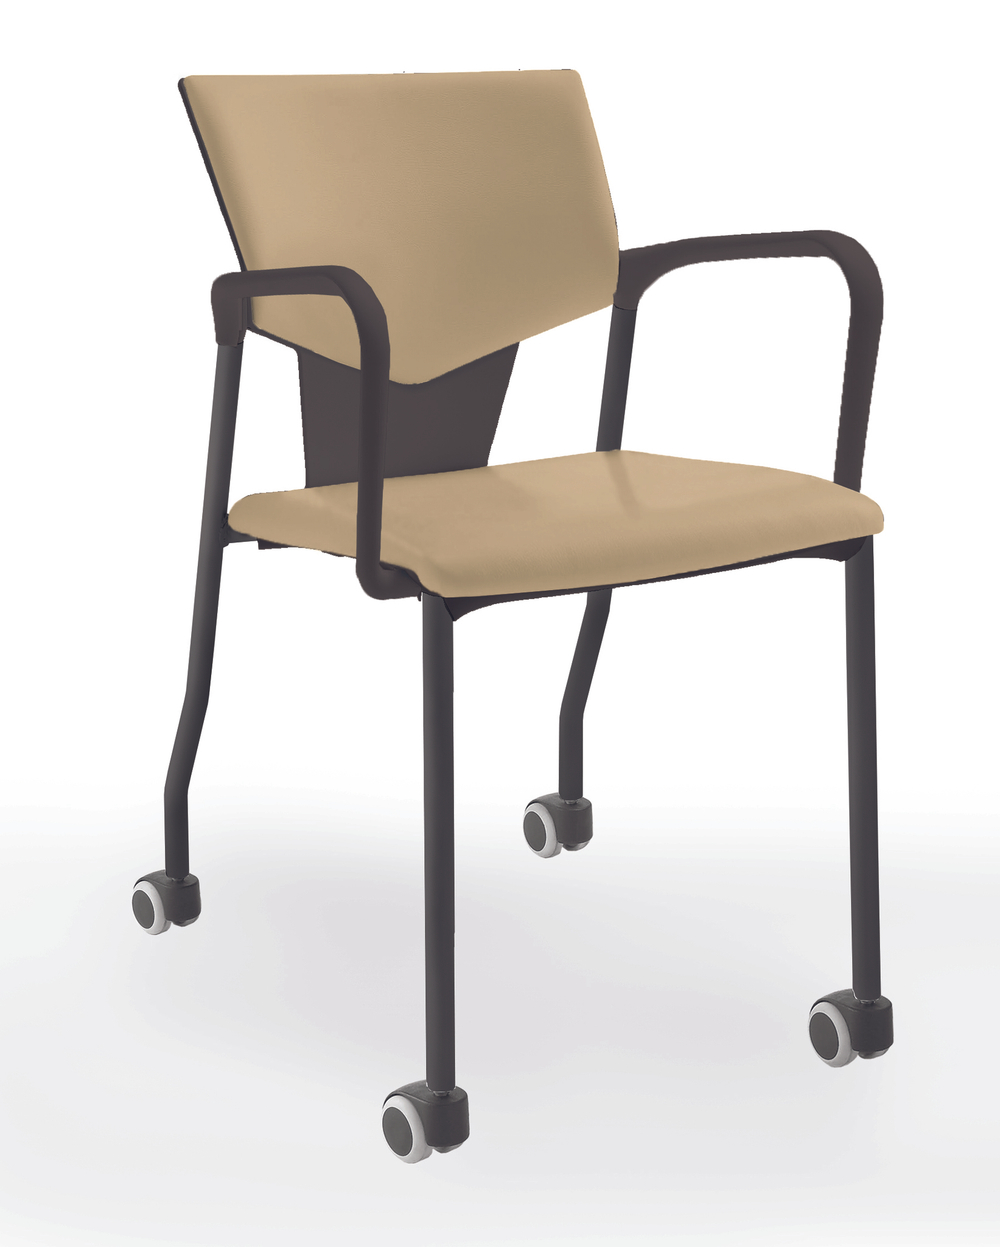 Aktiva стул на 4 ногах и колесах с мягким сиденьем и спинкой